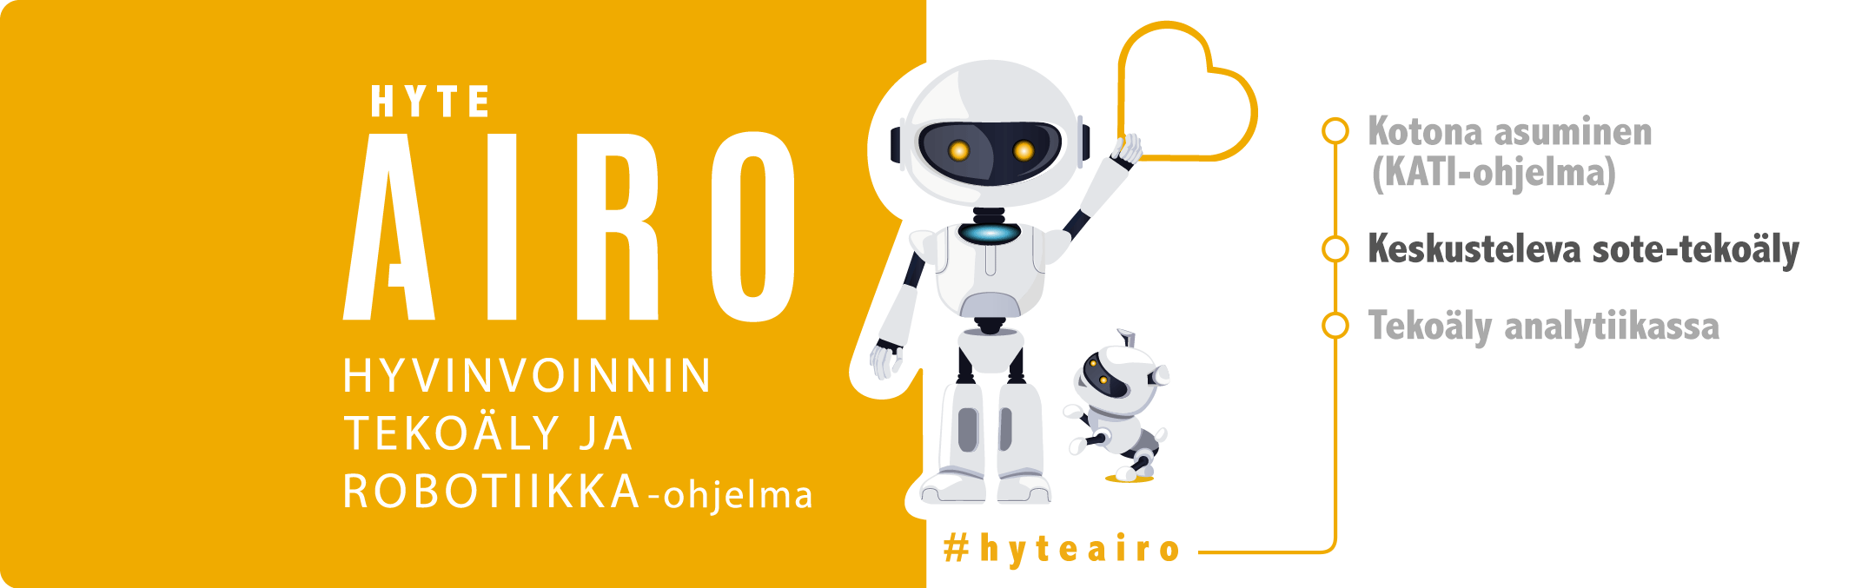 Hyteairon logo roboteilla, hyvinvoinnin ja tekoäly ja robotiikka-ohjelma. Kotona asuminen (KATI-ohjelma), Keskusteleva sote-tekoäly (boldattuna) ja Tekoäly analytiikassa.